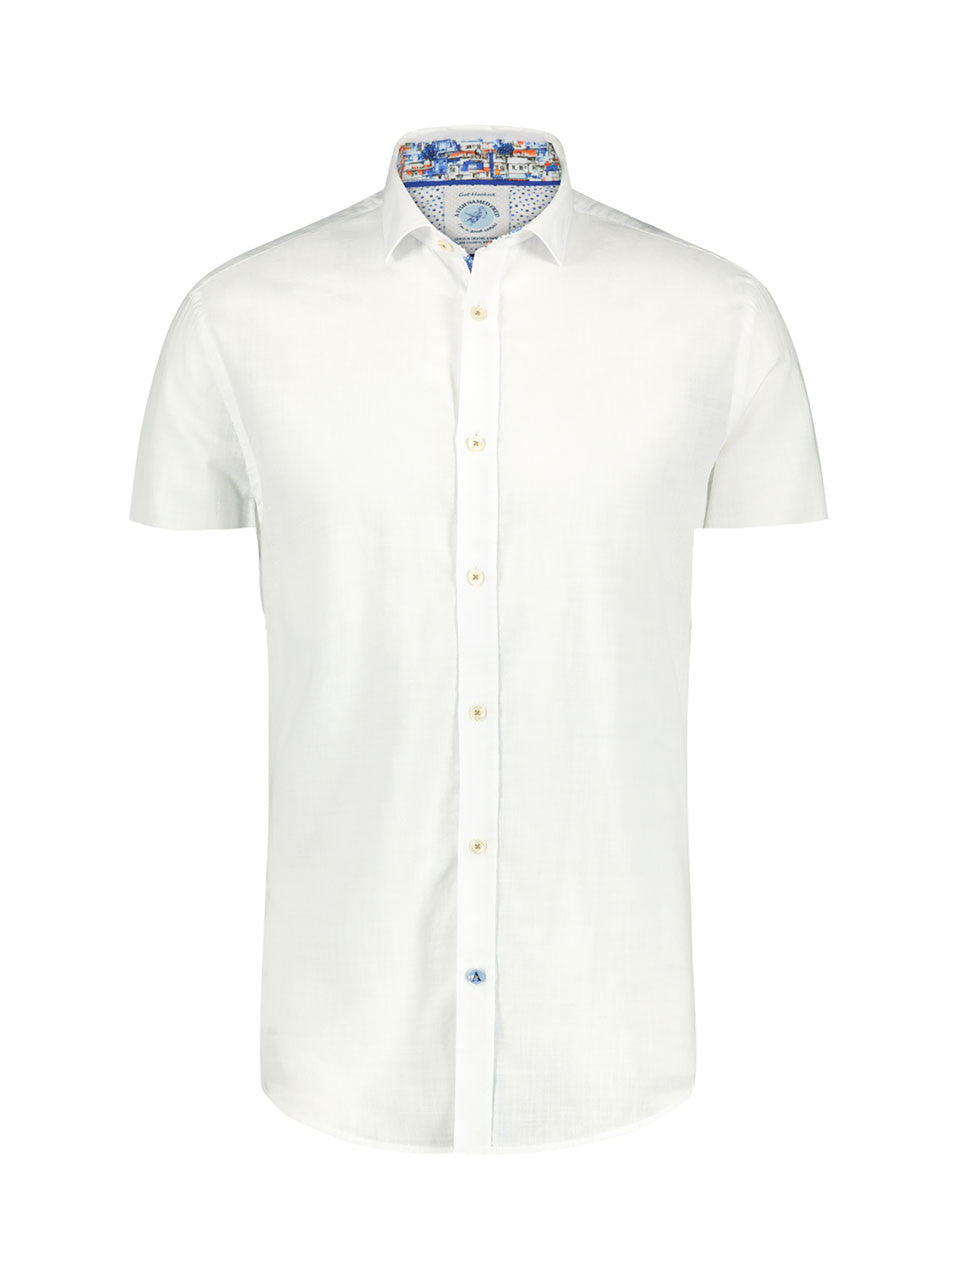 Shirt SS linen white brasil